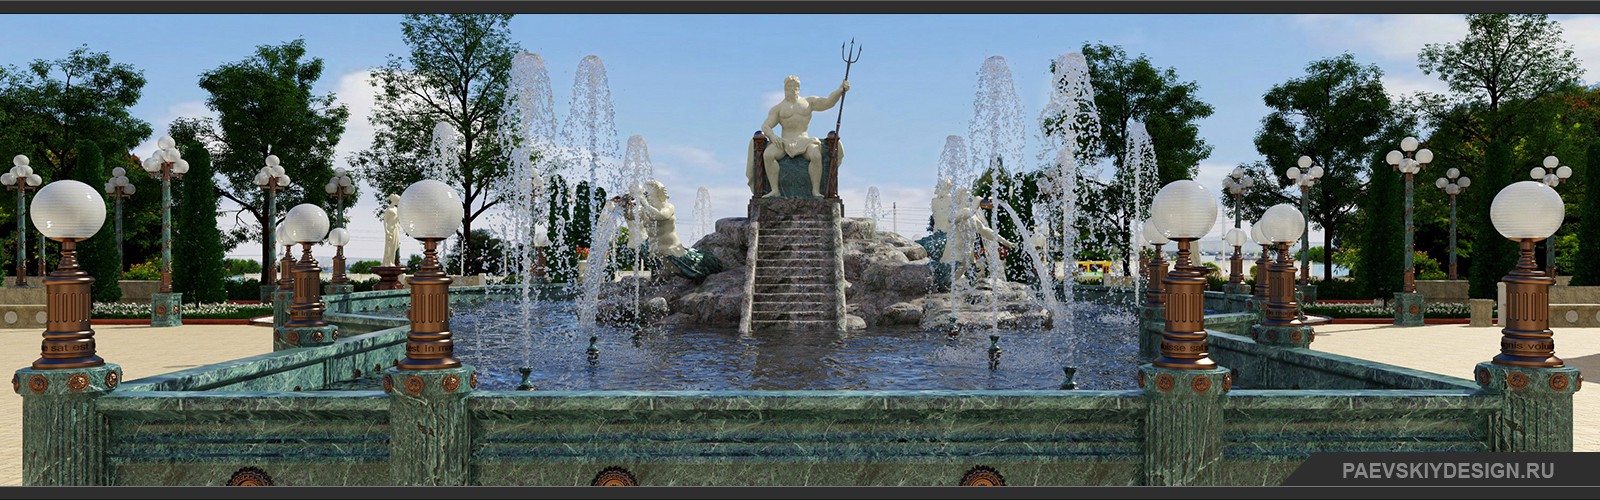 Дизайн фонтана в ландшафтном дизайне сквера и парка